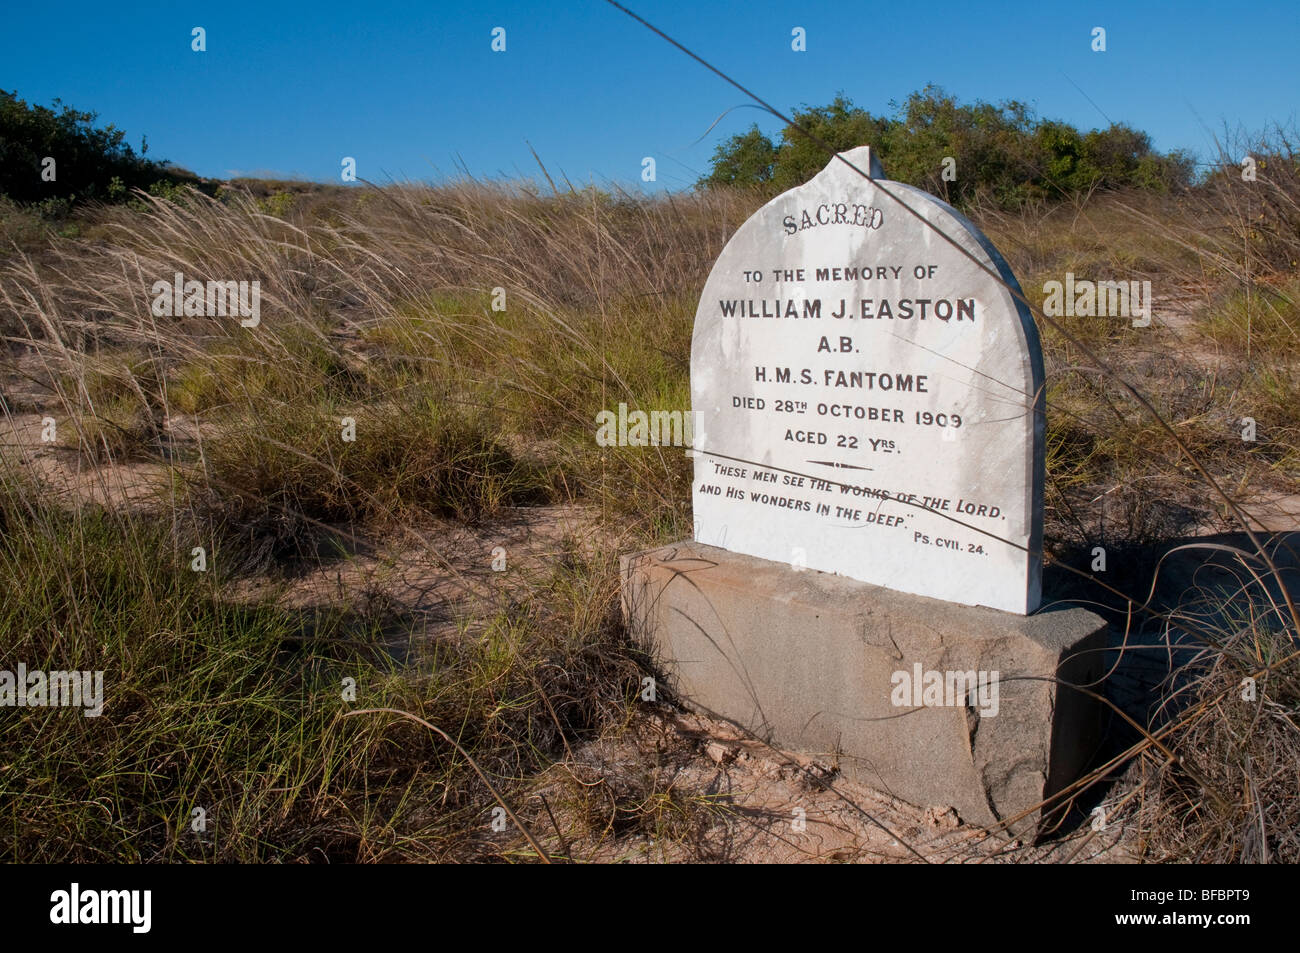 La tombe d'un jeune solitaire de la Marine royale de l'HMS fantome sur la côte d'australie occidentale près de Broome Banque D'Images